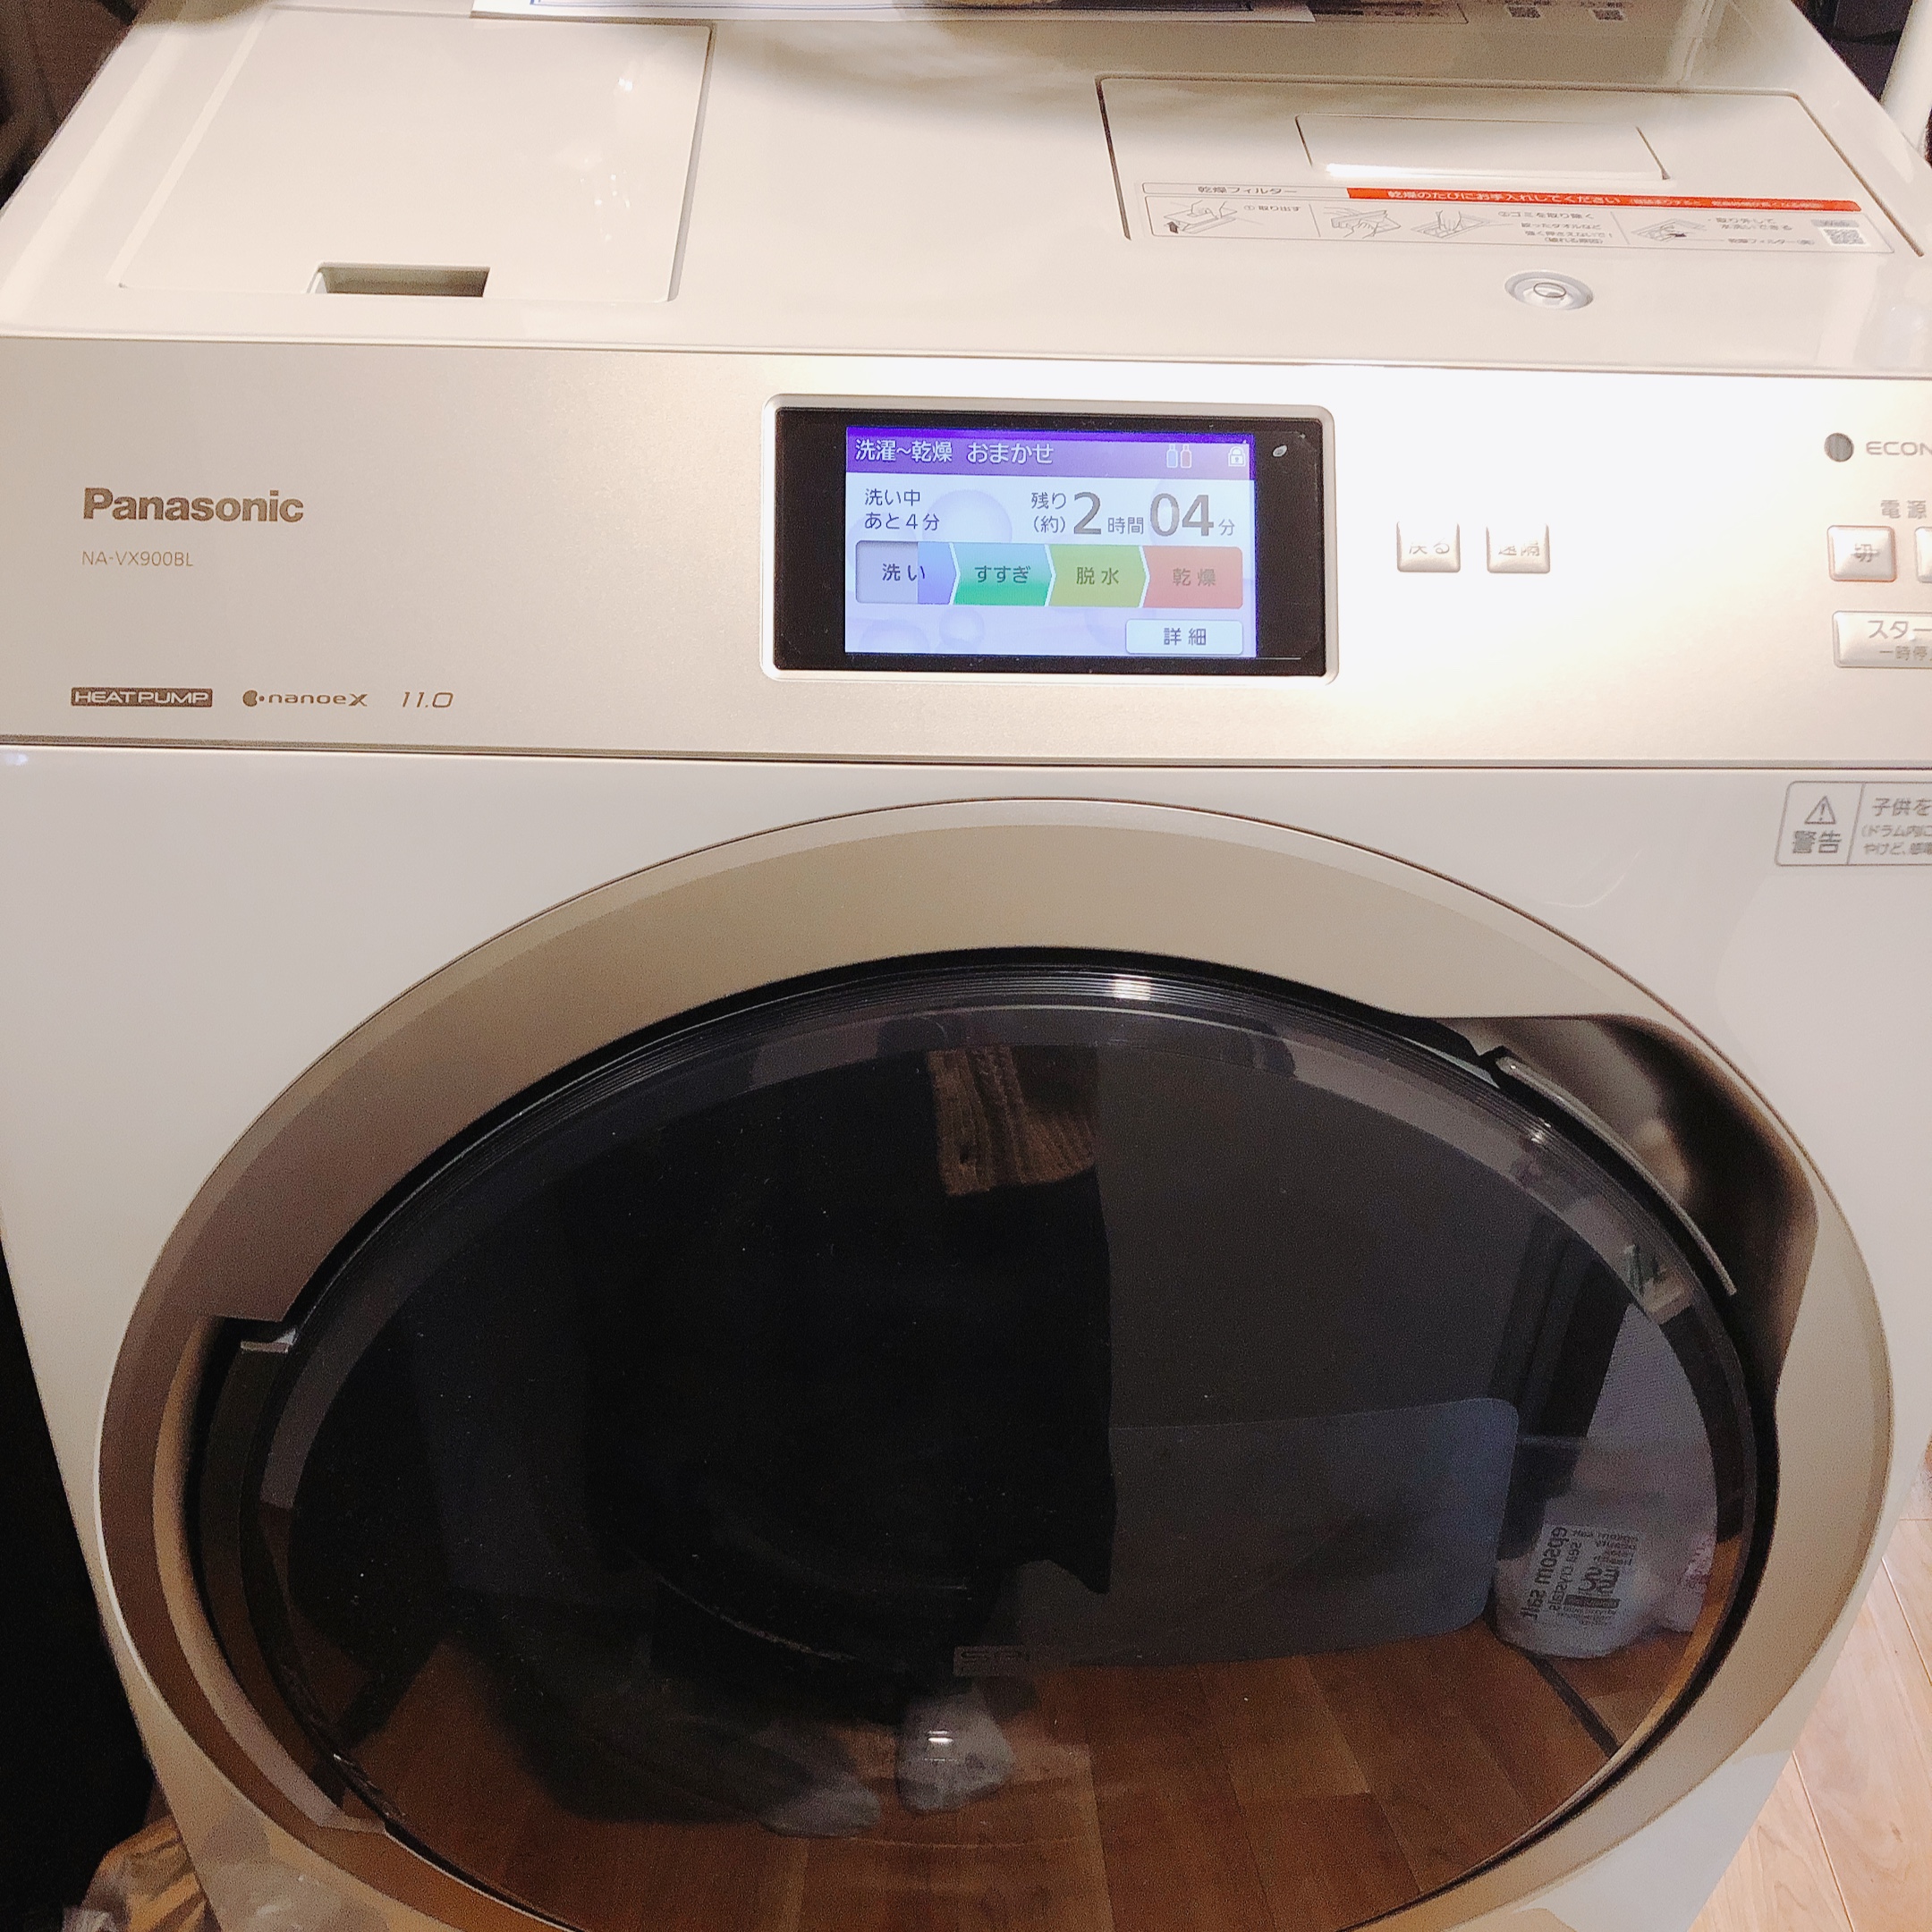 パナソニック ドラム式洗濯機 NA-VX900Bを使ってみた口コミ・レビュー! | コスメ部